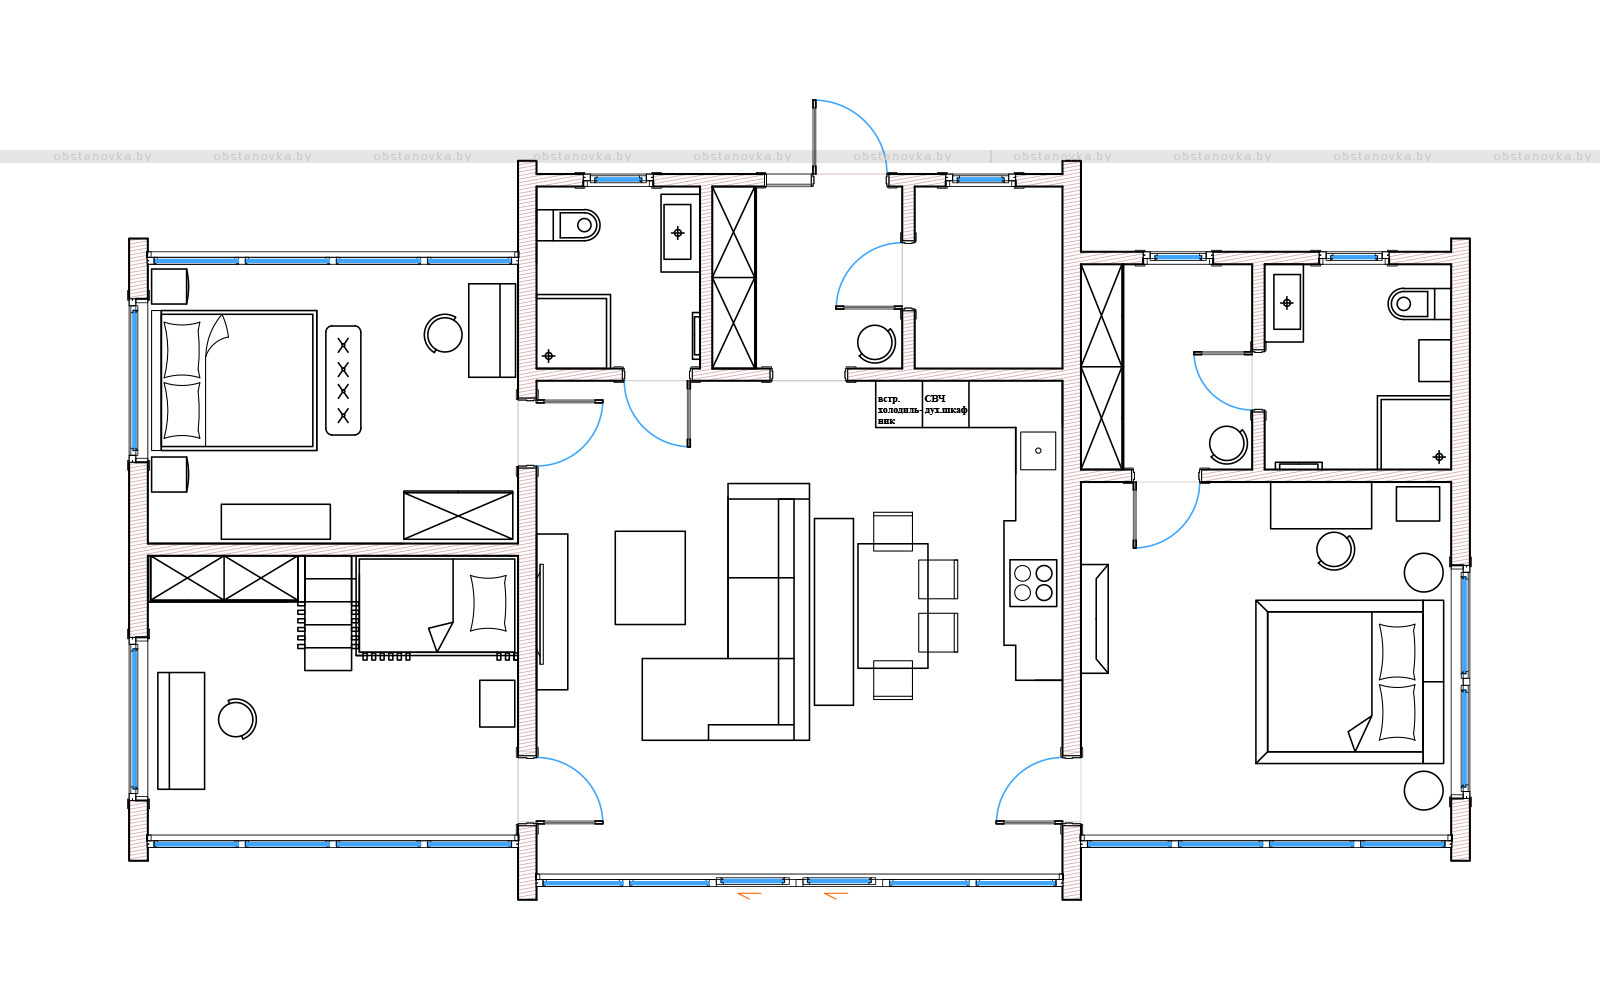 План модульного дома